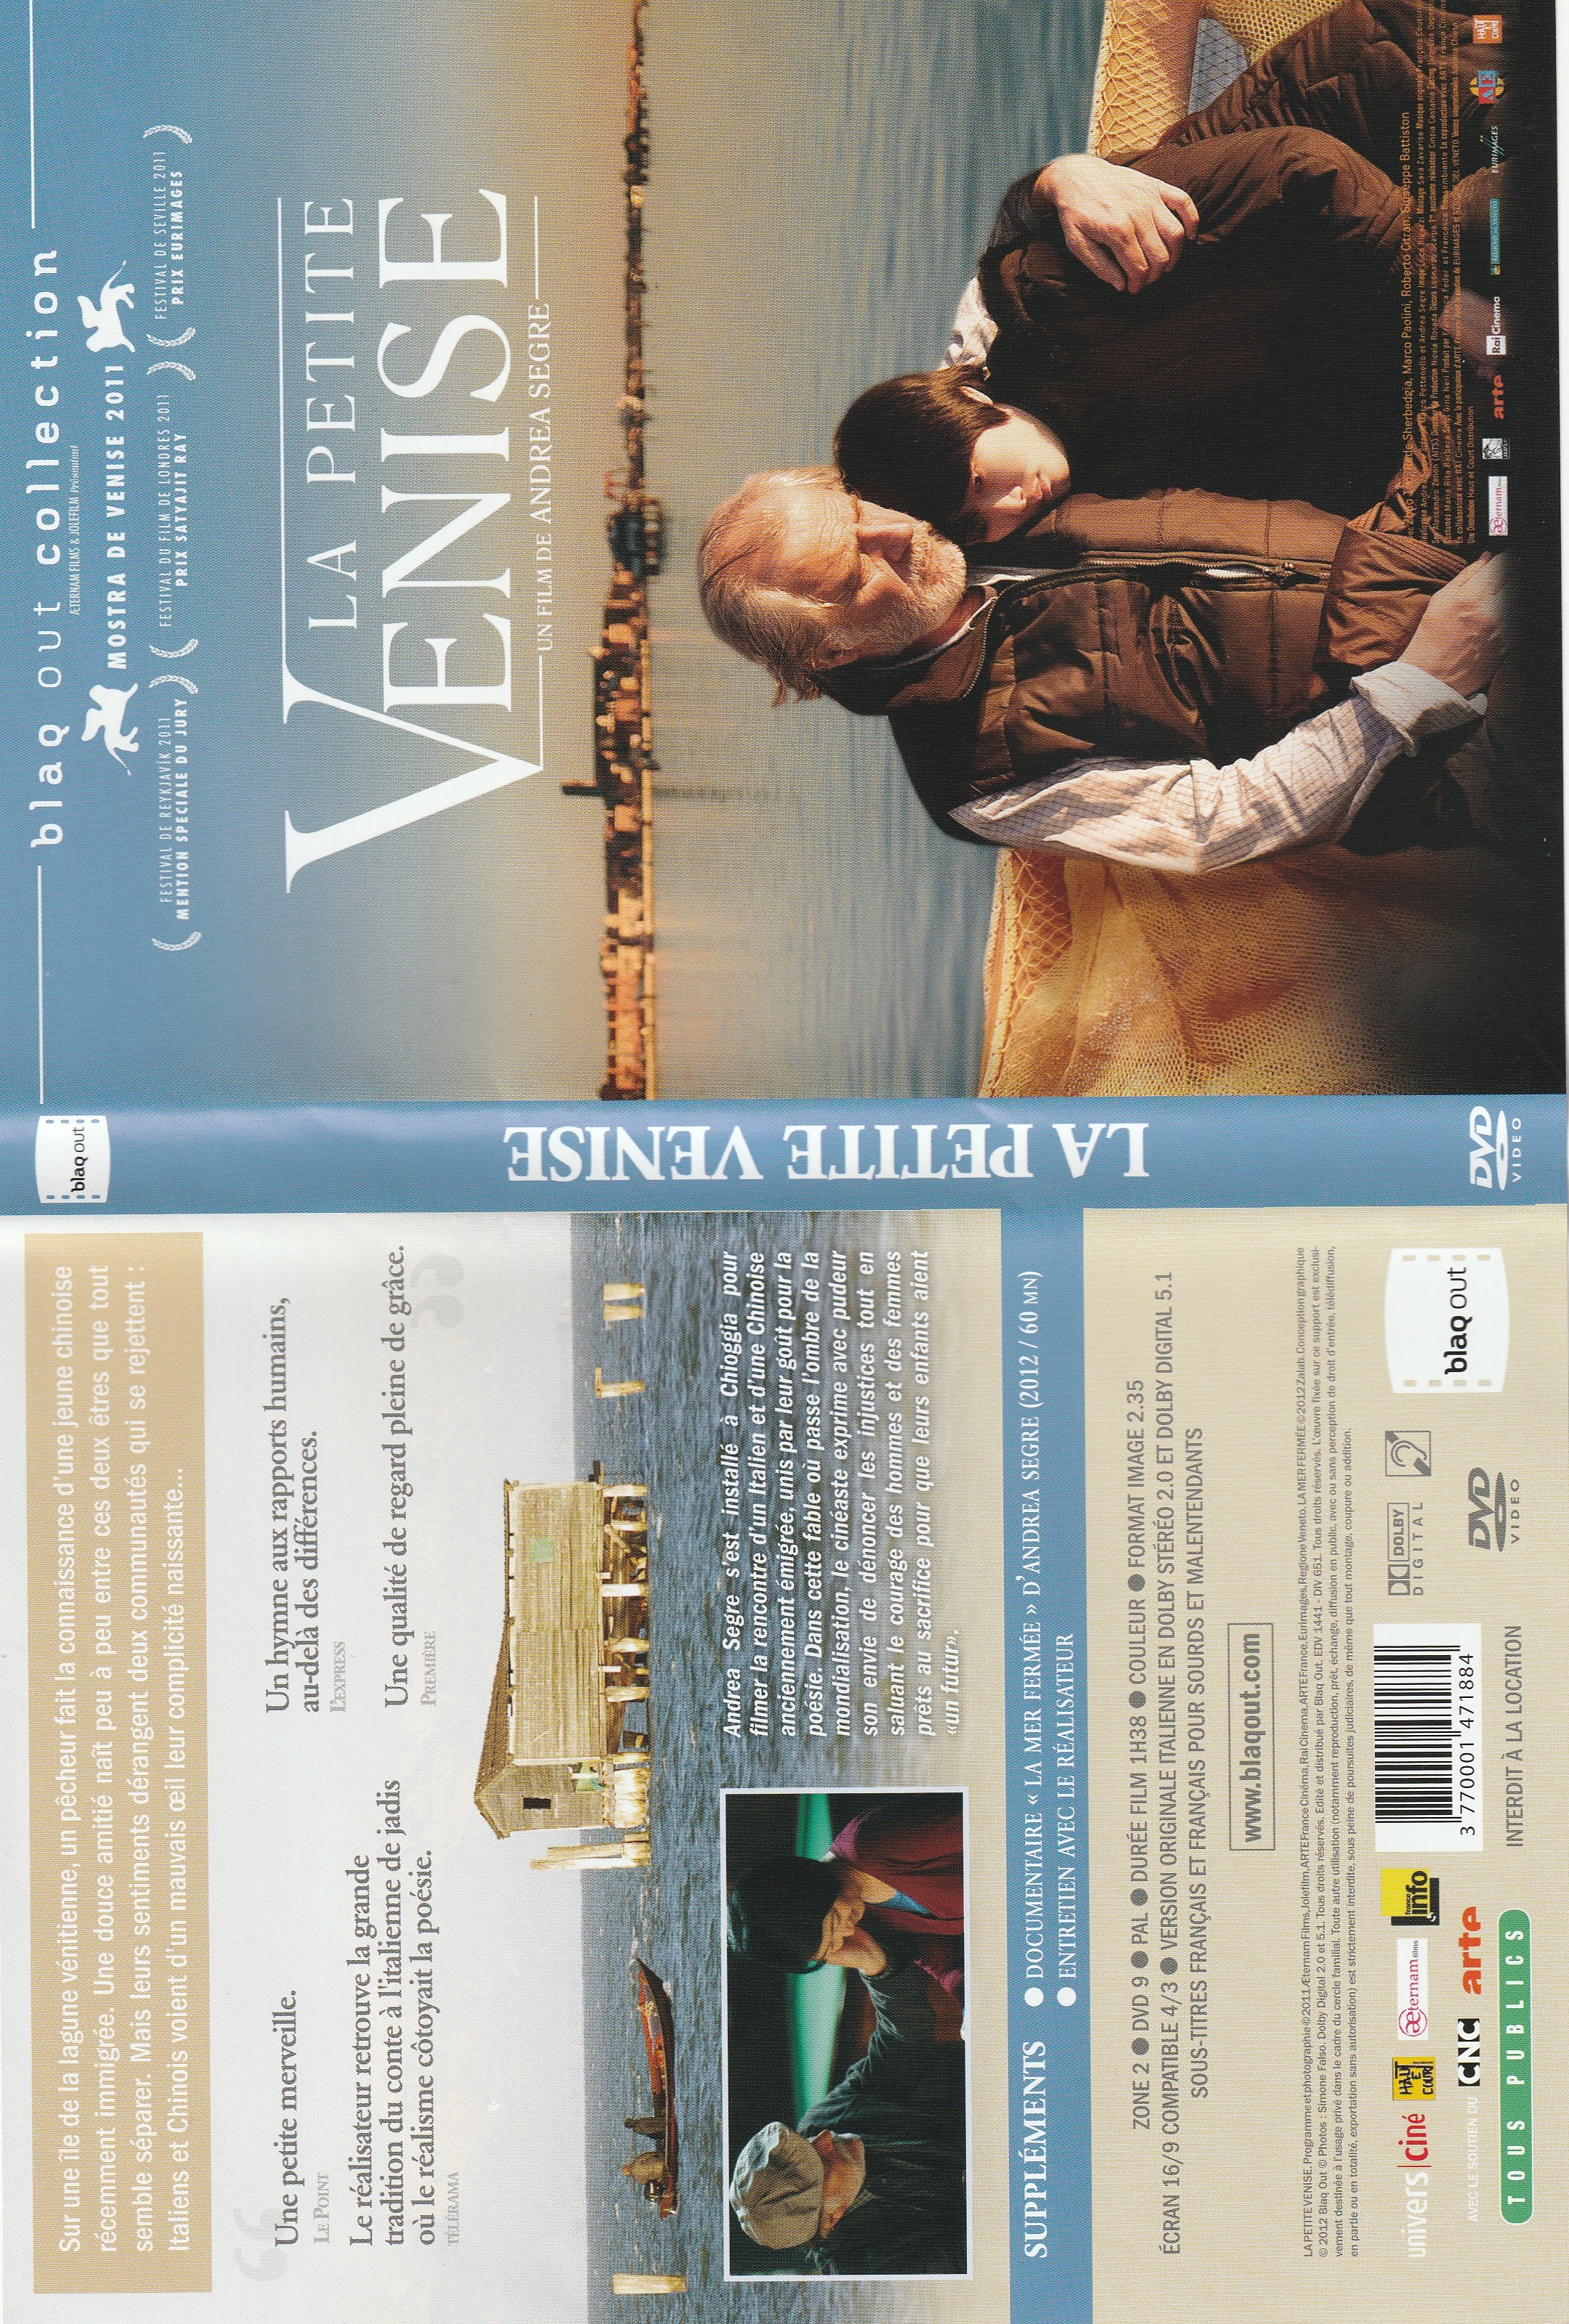 Jaquette DVD La petite Venise